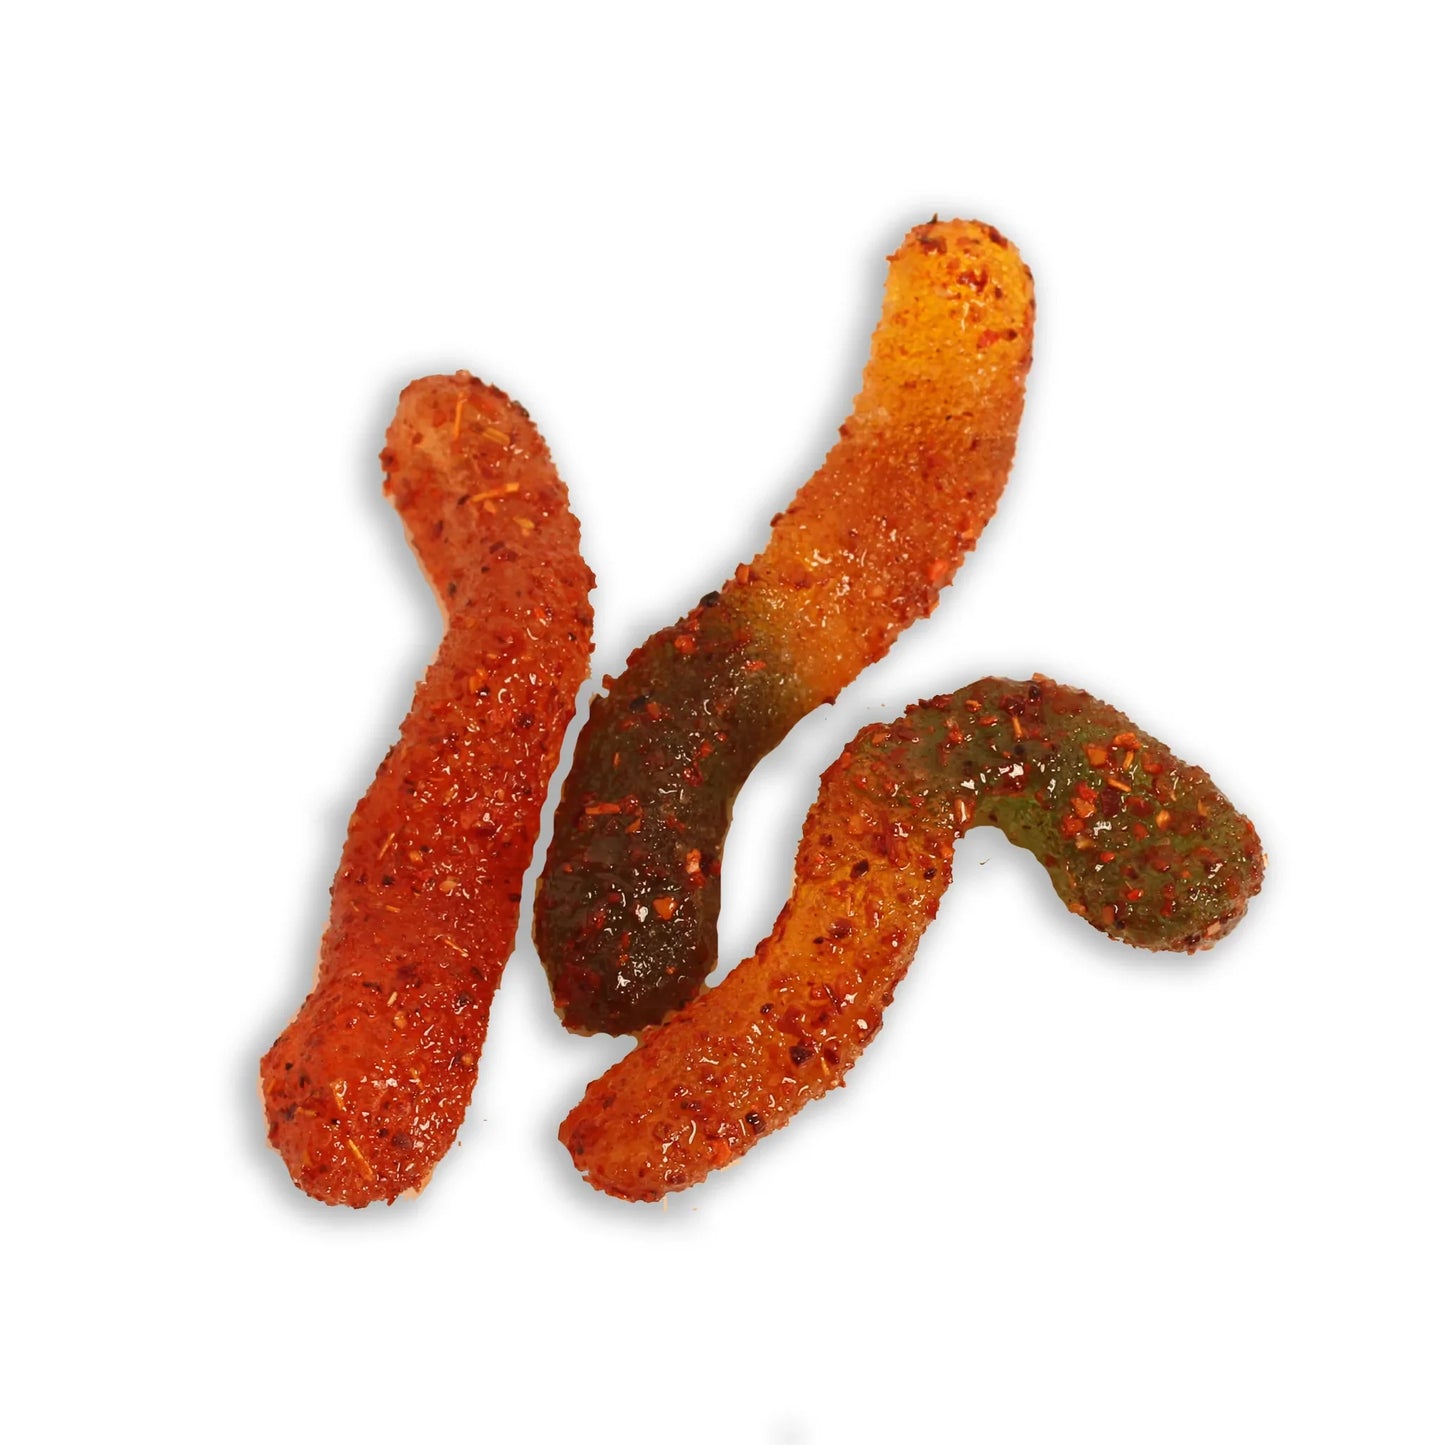 Chilli Bomba Spicy Gummy Worms 8oz